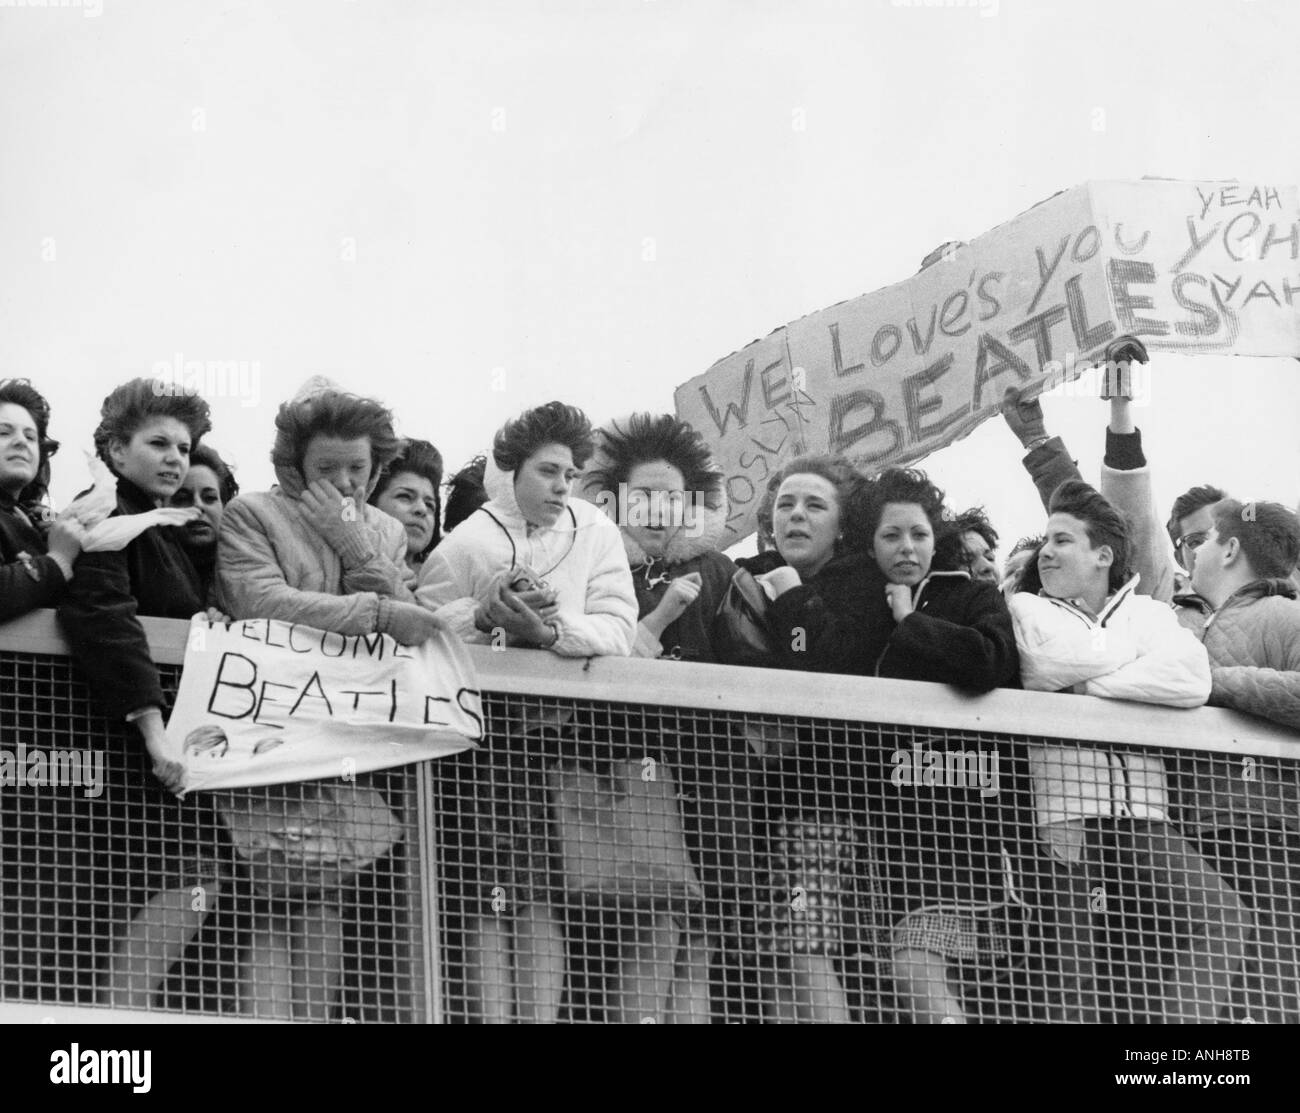 BEATLES fans américains attendent le groupe à l'aéroport de Londres en octobre 1964 aftger leur deuxième tournée américaine Banque D'Images